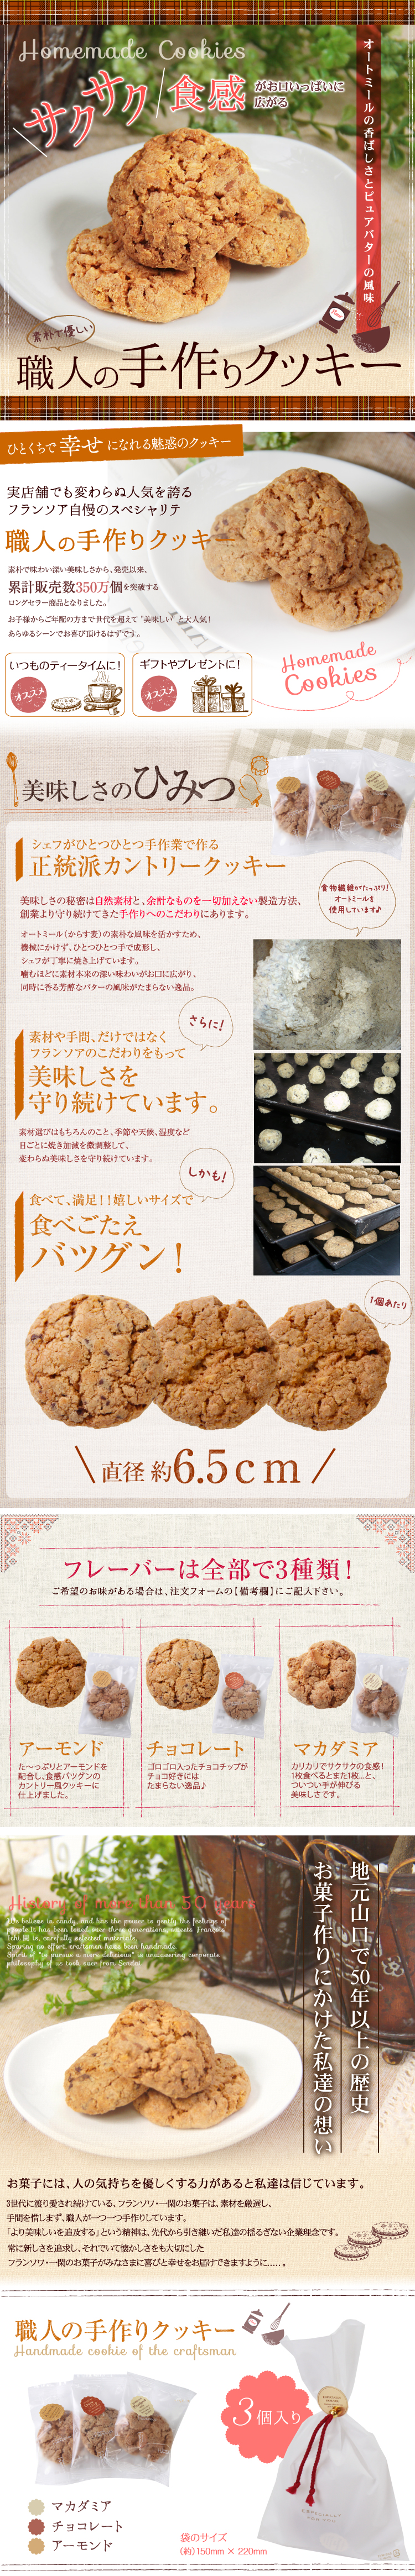 職人の手作りクッキーの楽天商品ページデザイン制作 和菓子 洋菓子 スイーツ